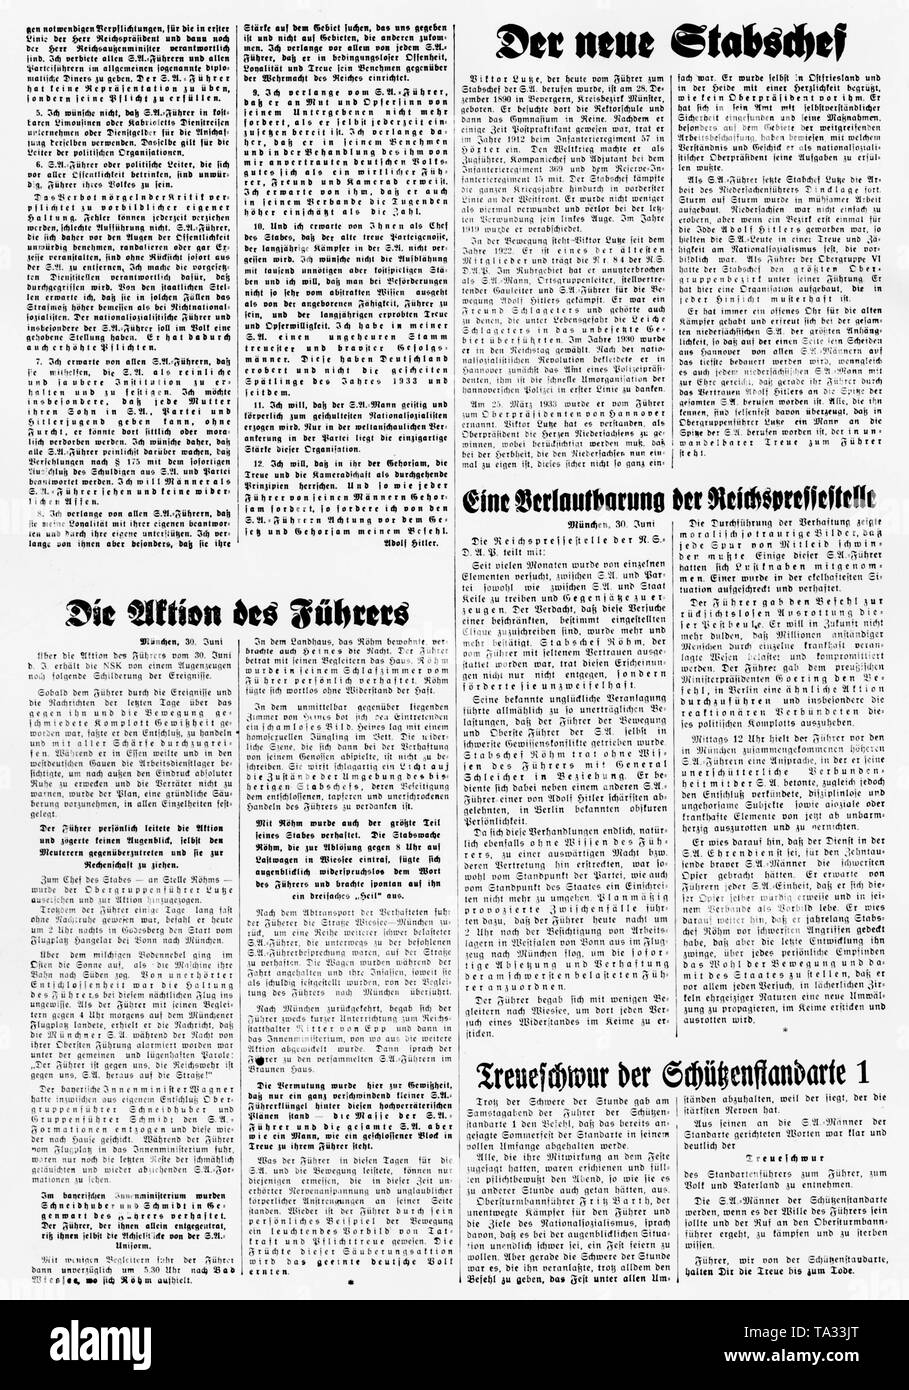 Pagina di giornale sul Roehm-Putsch presumibilmente nel 'Voelkischer Beobachter', il giornale del partito della NSDAP, con la stampa sul 'l'azione del Fuehrer', come pure il nuovo capo del personale della SA Viktor Lutze, una dichiarazione dell'ufficio stampa nonché il giuramento di fedeltà del Schuetzenstandarte 1. Foto Stock